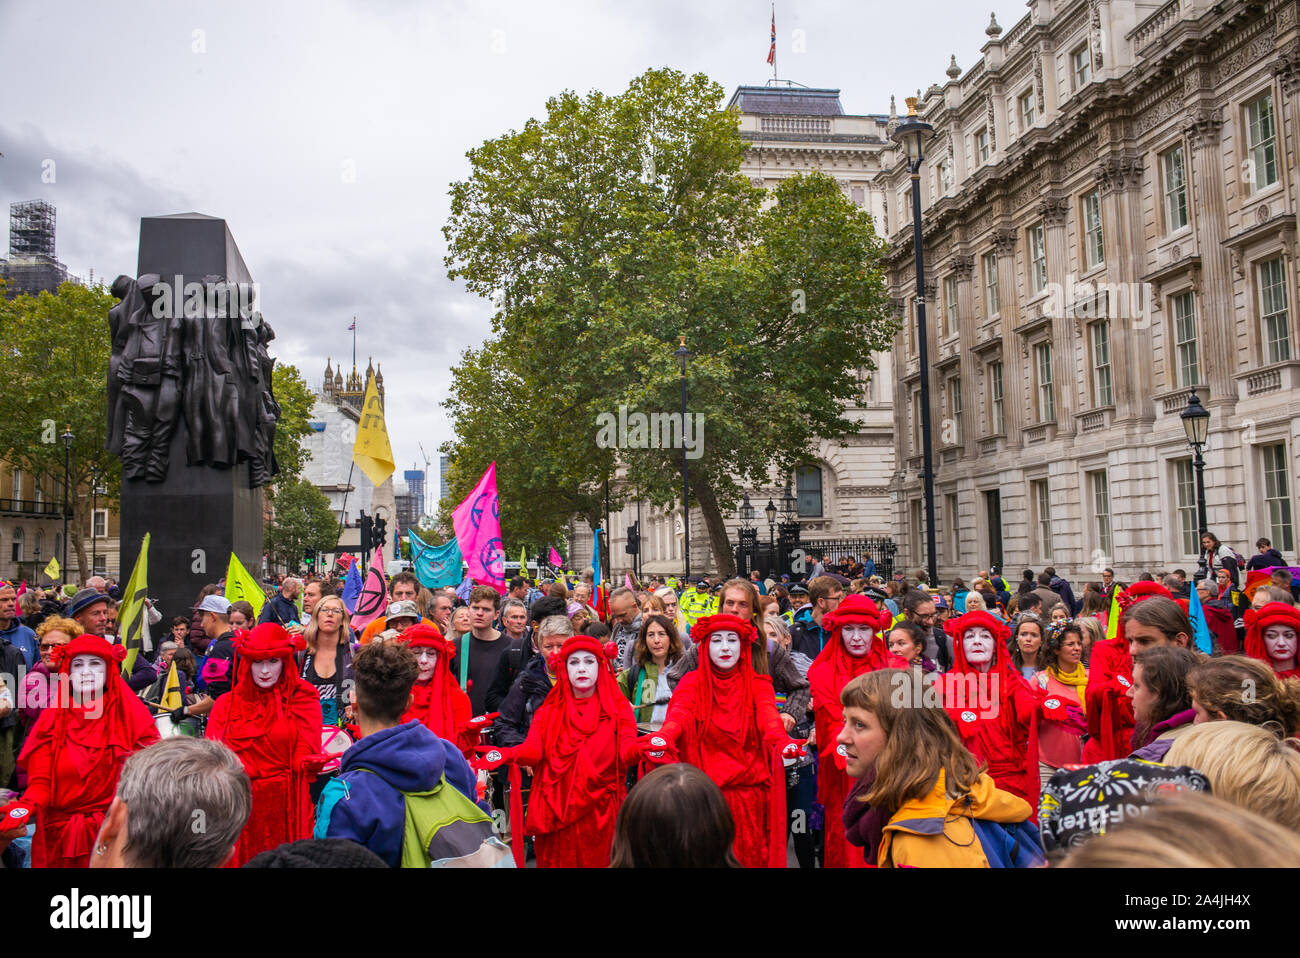 Extinción la rebelión de las protestas, las Brigadas Rojas/Rojo rebeldes en batas, Whitehall, Londres, 7 de octubre de 2019 Foto de stock